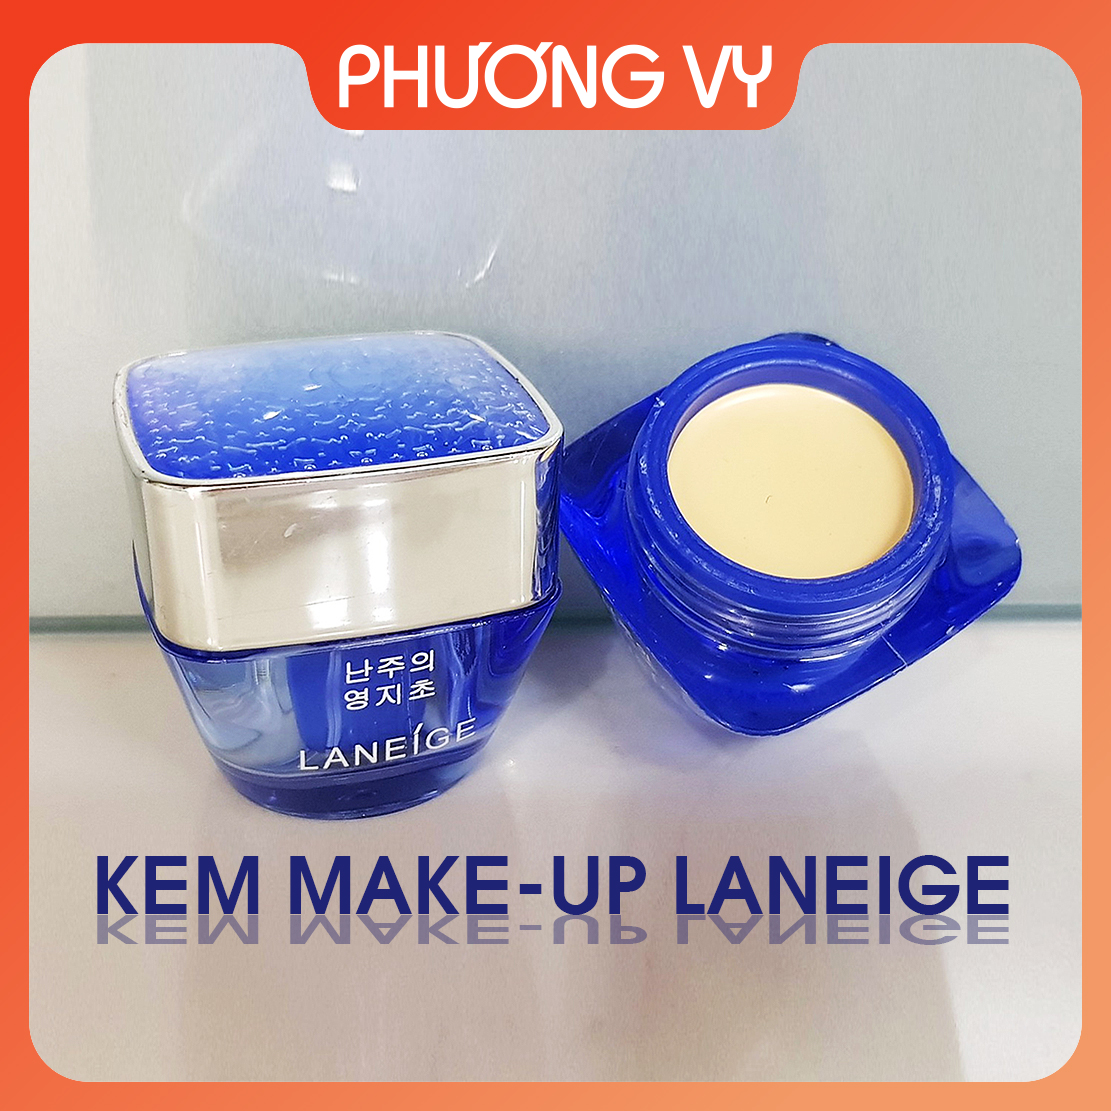 [CHÍNH HÃNG] Kem chống nắng Laneige Xanh giúp chống nắng và dưỡng ẩm cho da kem nám Hàn Quốc mỹ phẩm Laneige.